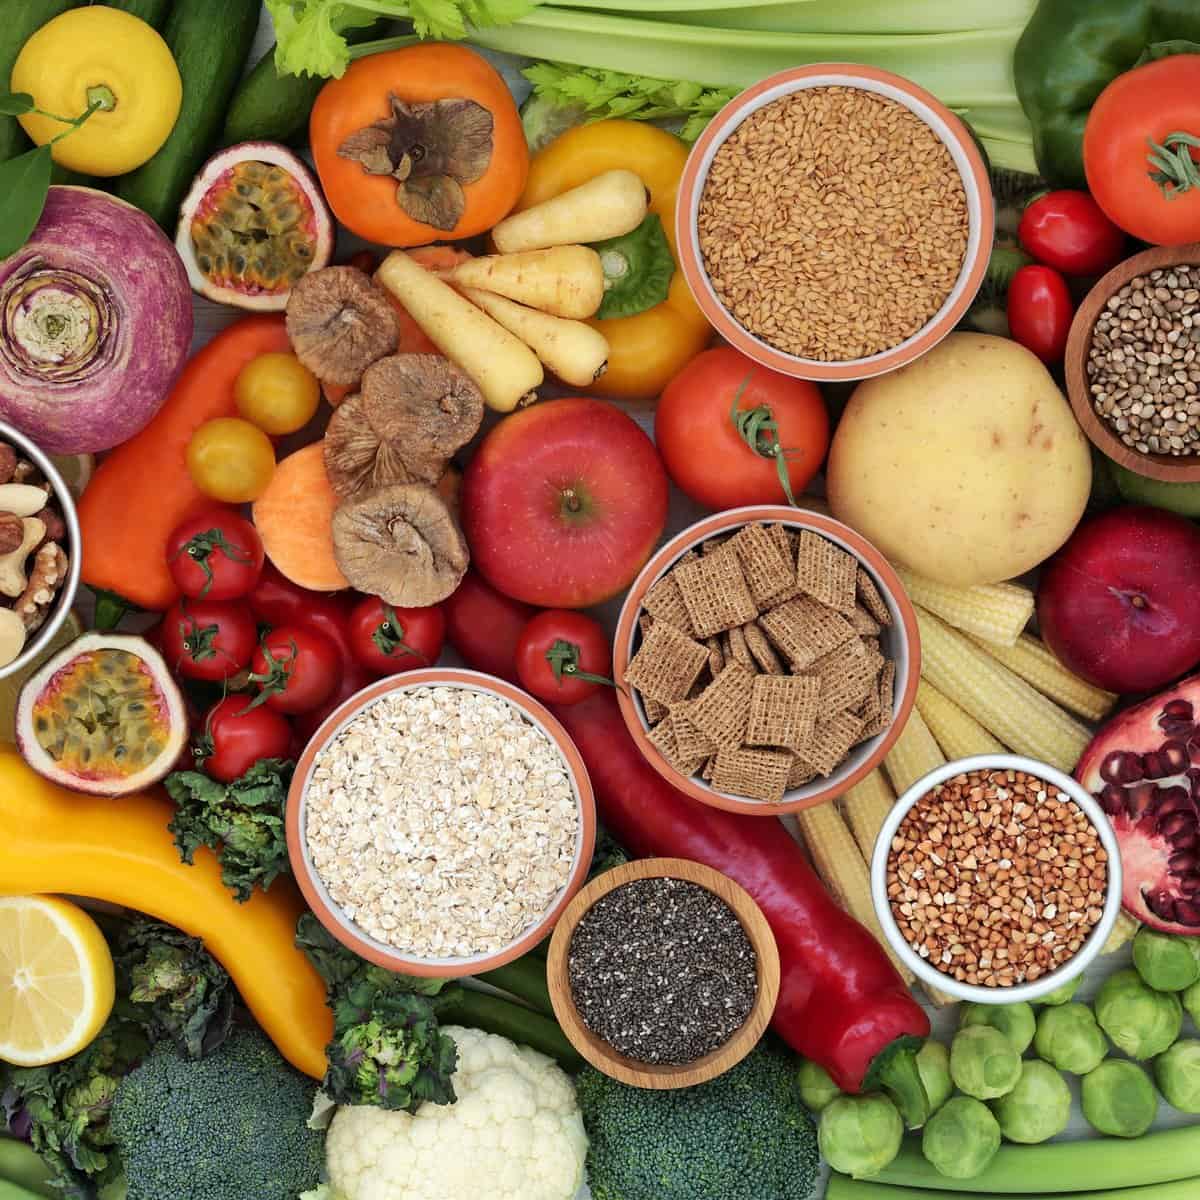 Beaucoup de légumes, de fruits, de protéines végétales et de sources de fibres pour une alimentation rénale colorée.